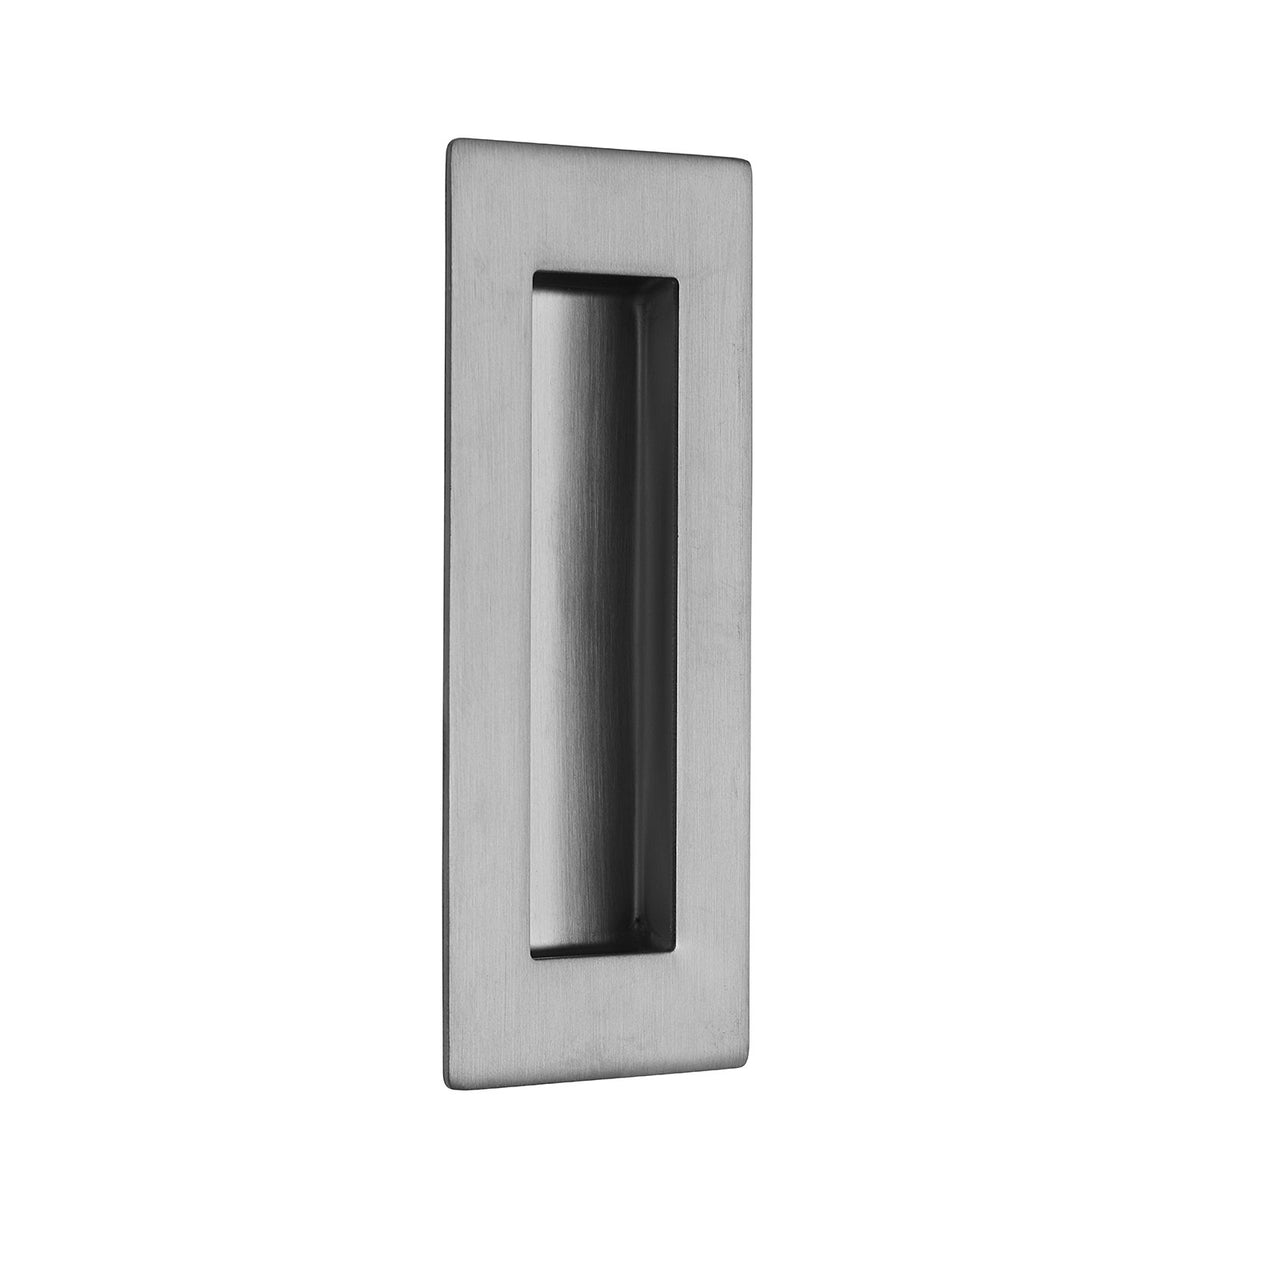 Satin Stainless Steel Pocket/Sliding Door Rectangular Flush Pull Handle - 120mm x 50mm